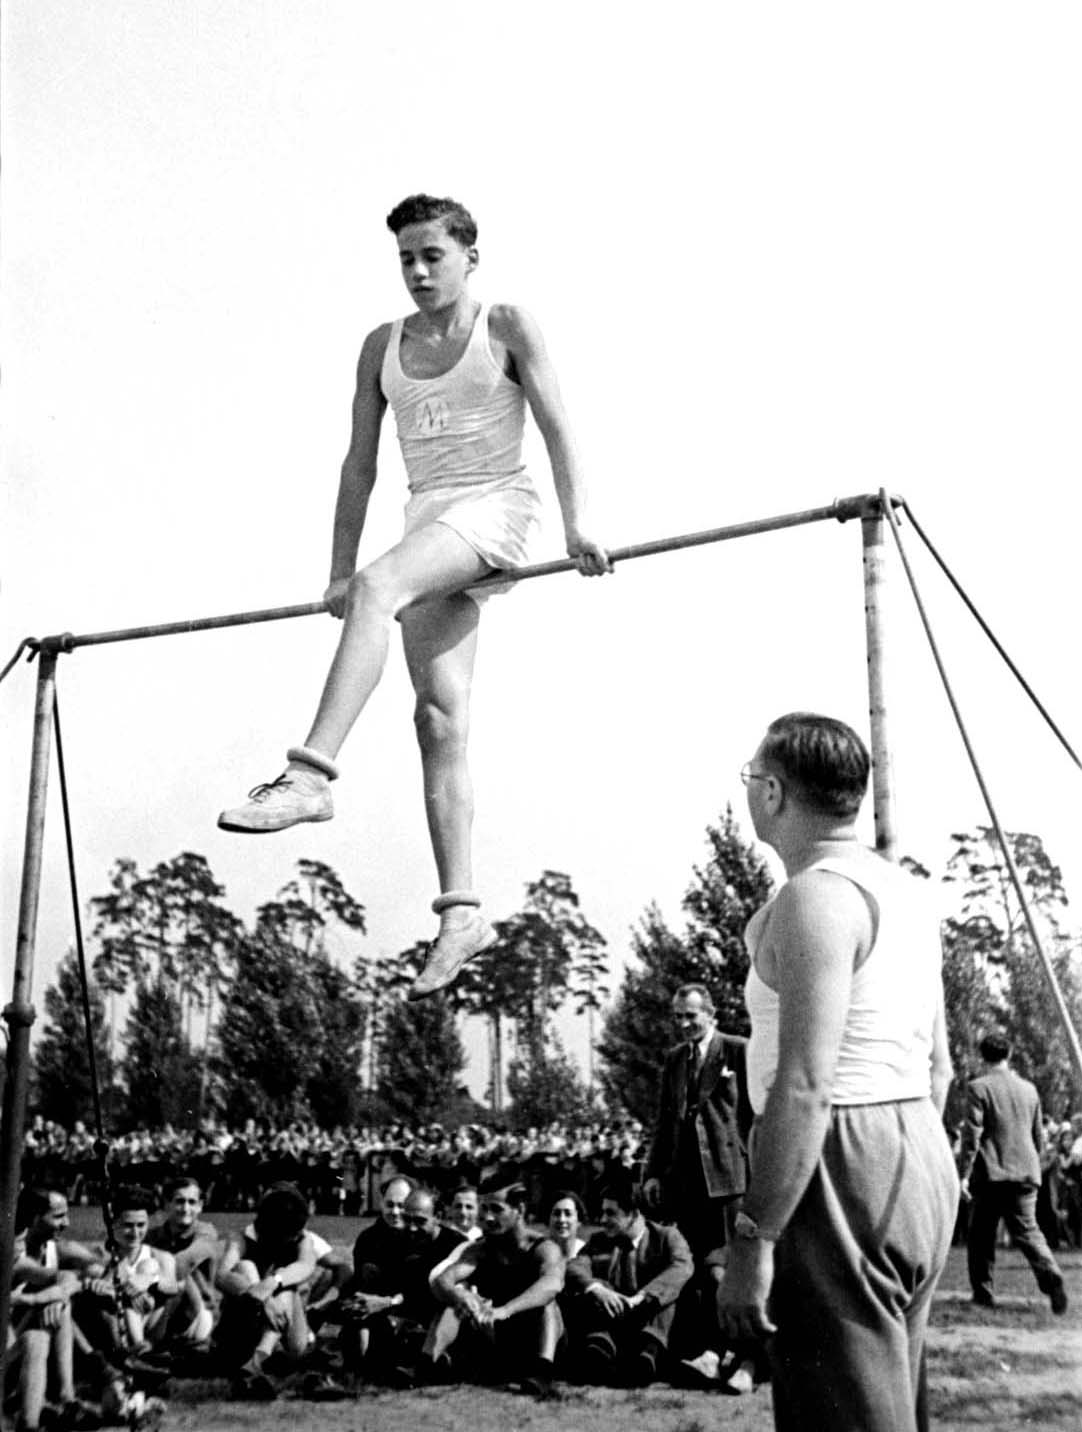 Берлин, Германия, 1935. Гимнастические упражнения на спортивном мероприятии для учащихся еврейских школ